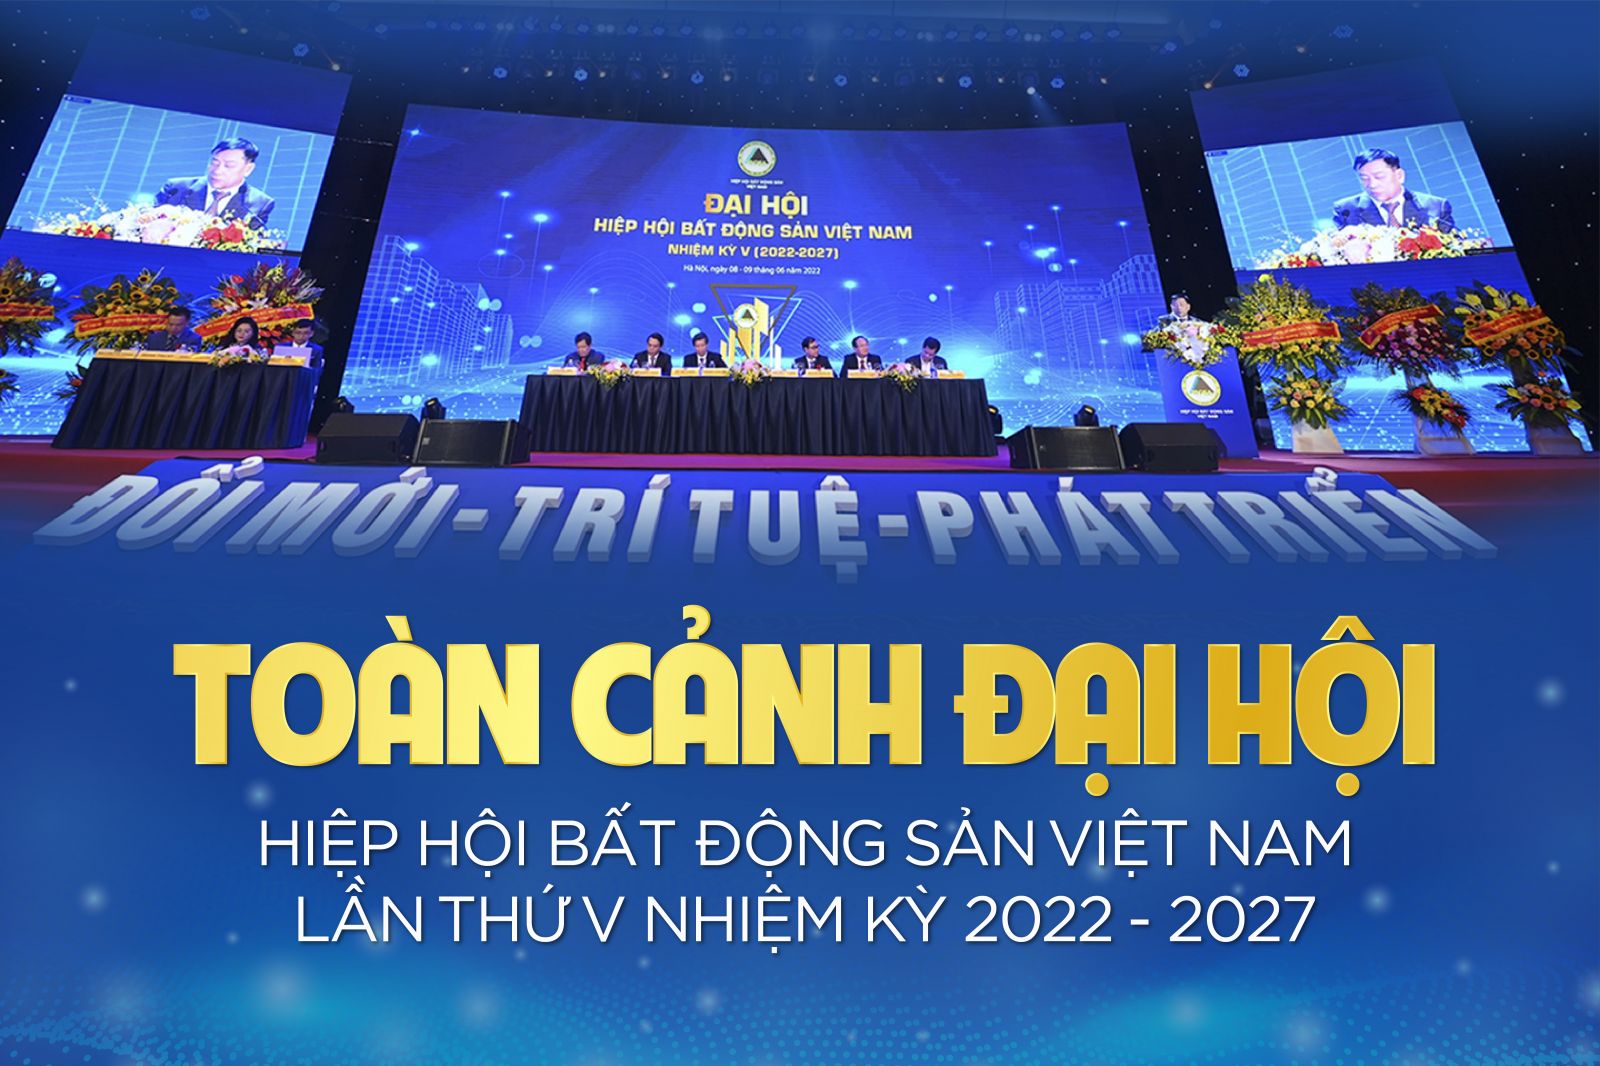 [ẢNH] Toàn cảnh Đại hội Hiệp hội Bất động sản Việt Nam lần thứ V nhiệm kỳ 2022 - 2027